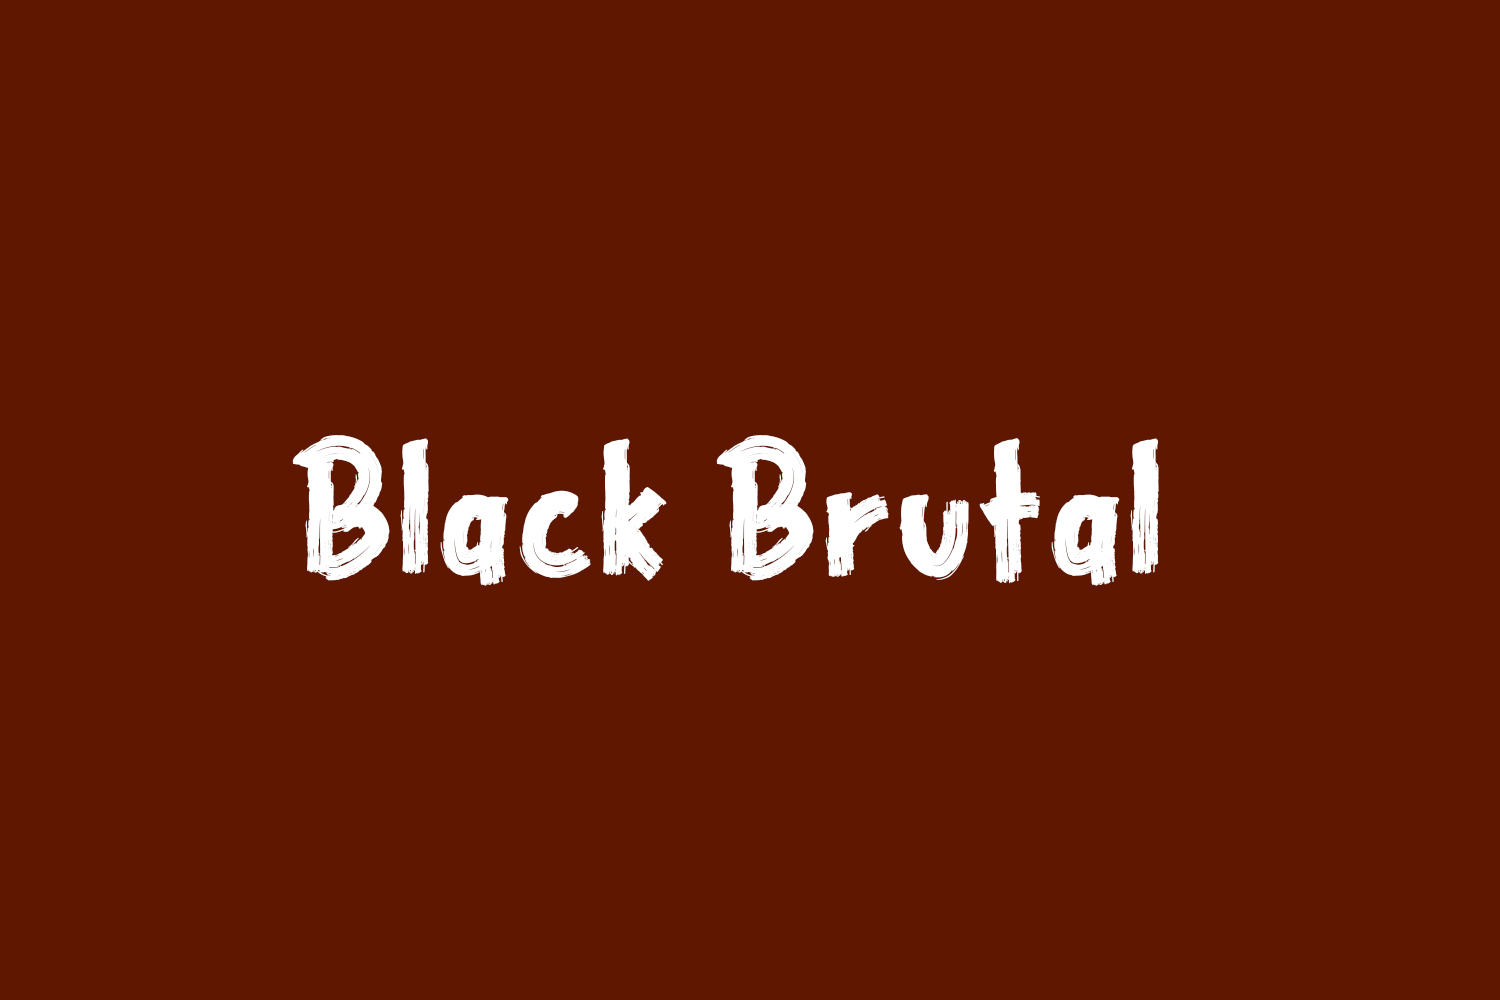 Black Brutal Free Font